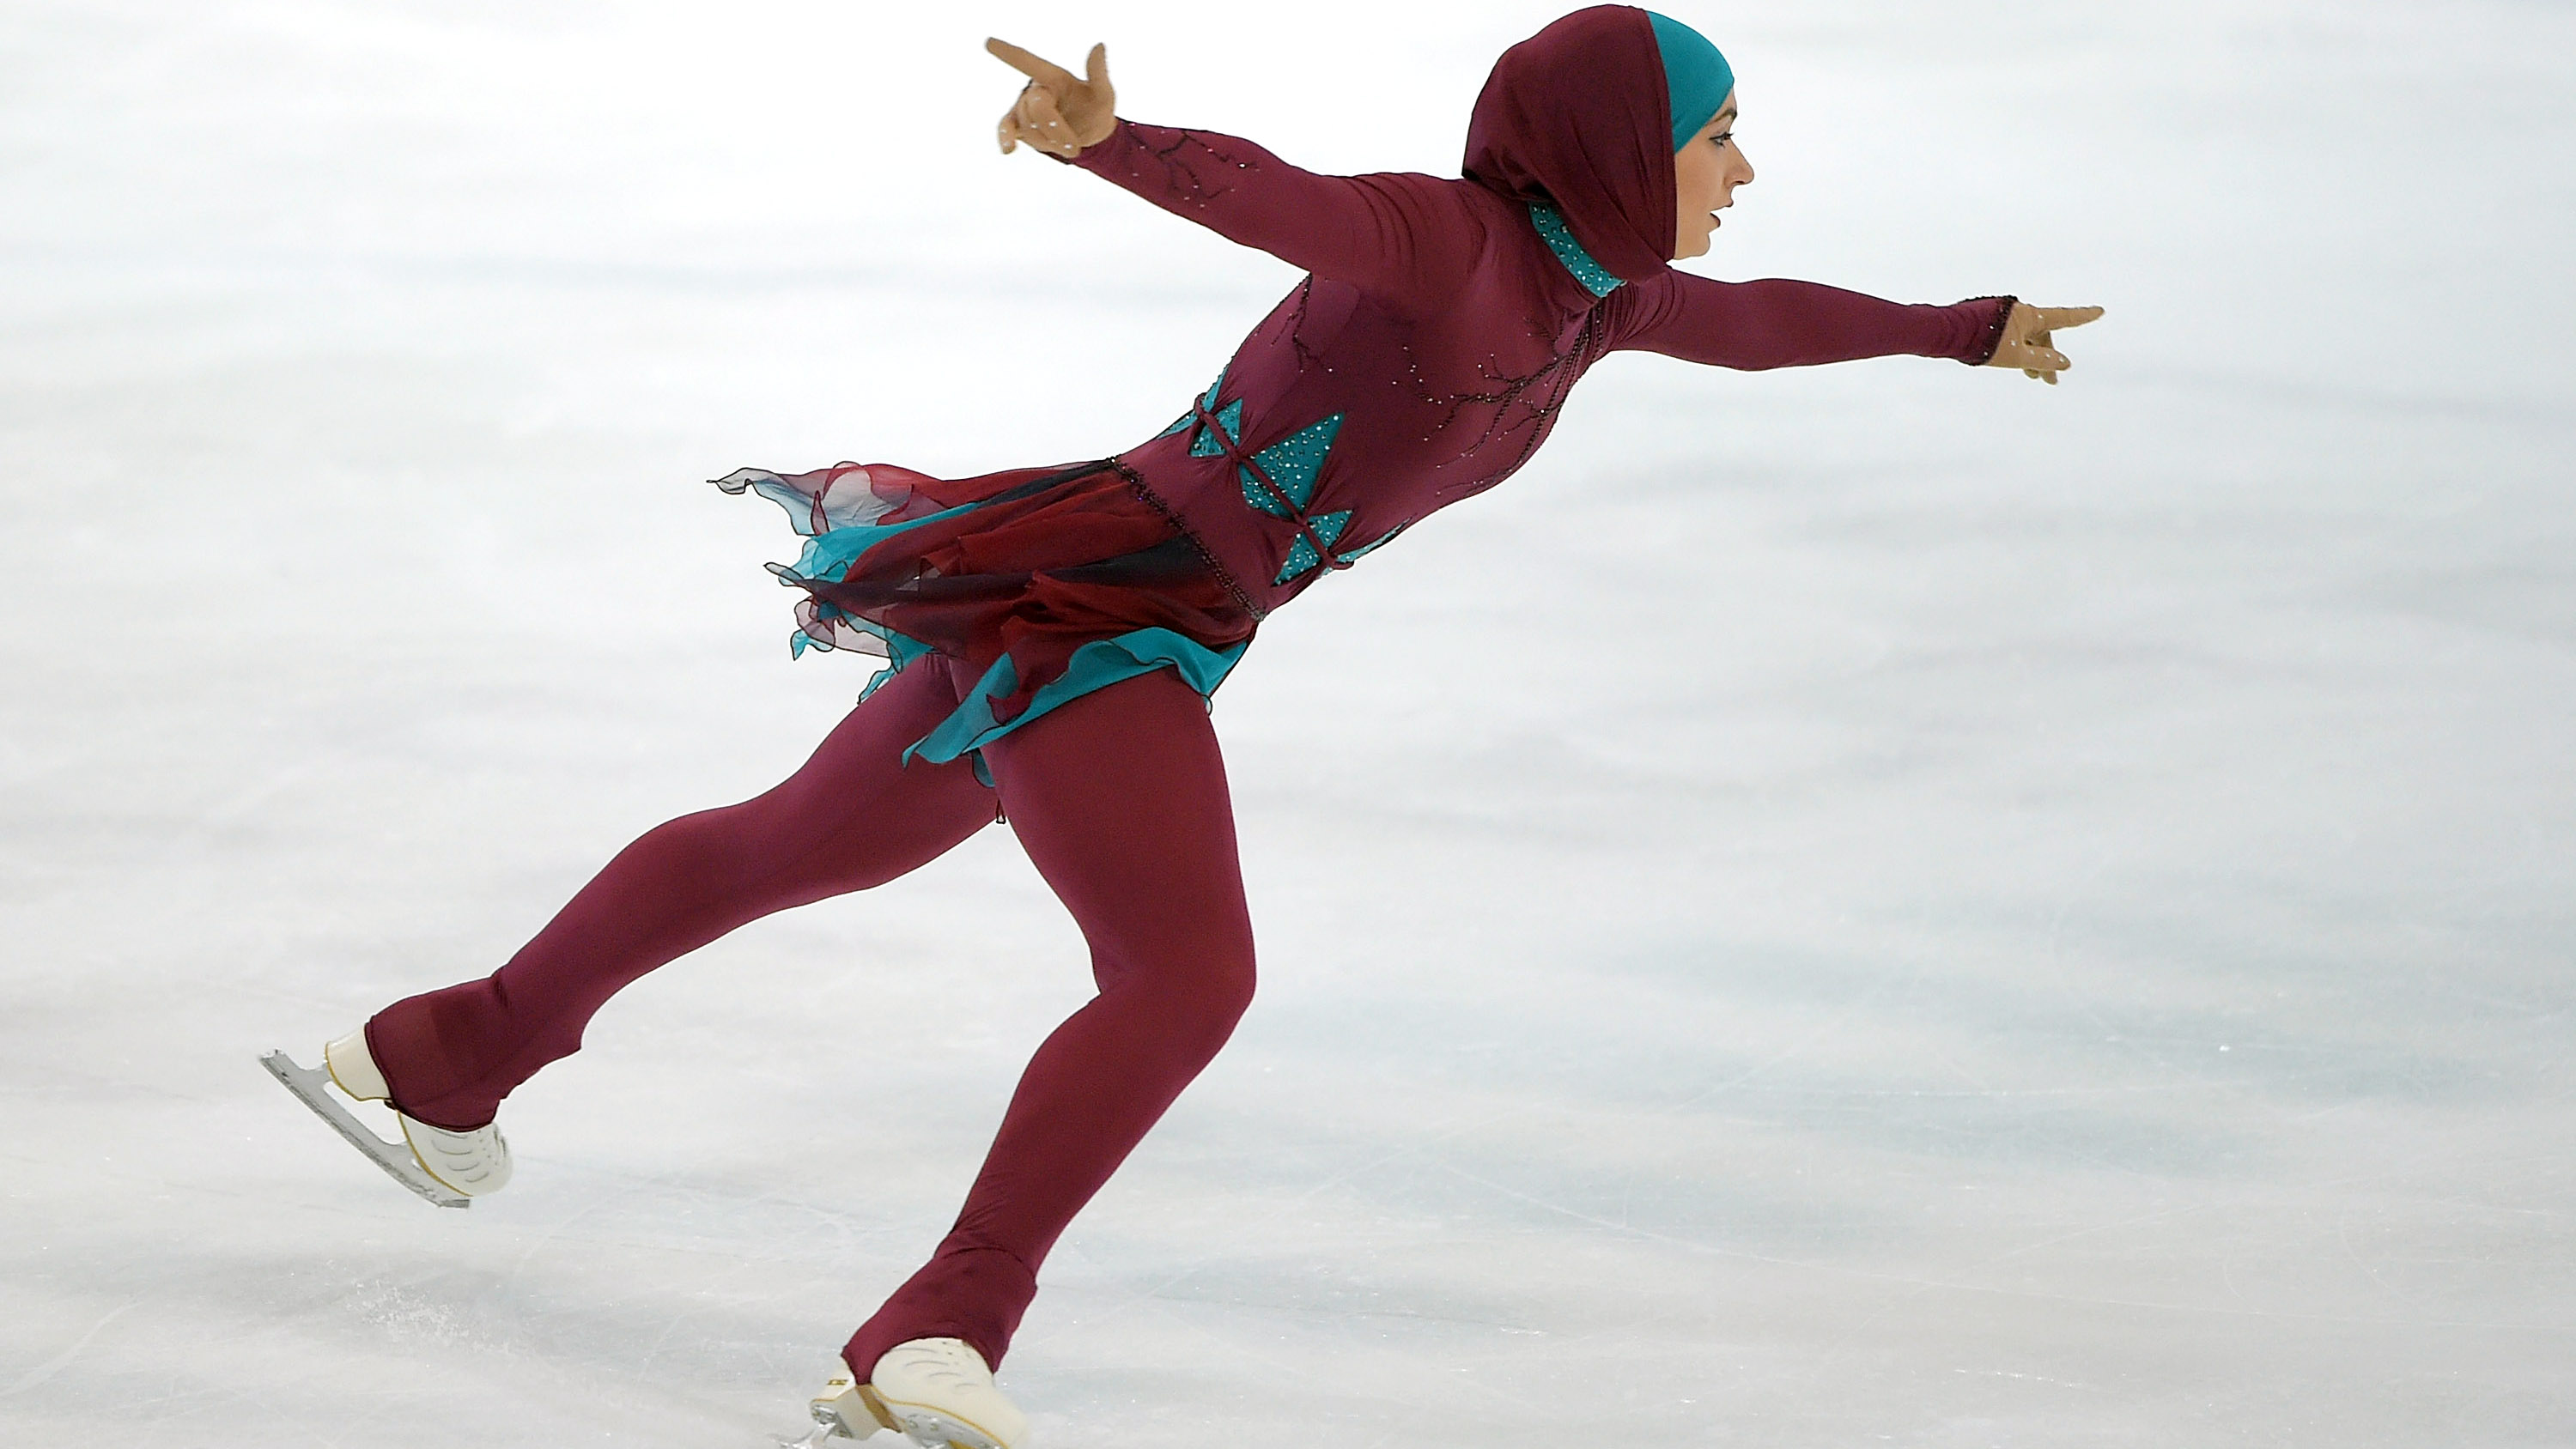 Zahra Lari, patinadora sobre hielo de los Emiratos Árabes, durante una competencia en Abu Dhabi. (Crédito: Tom Dulat / Getty Images)